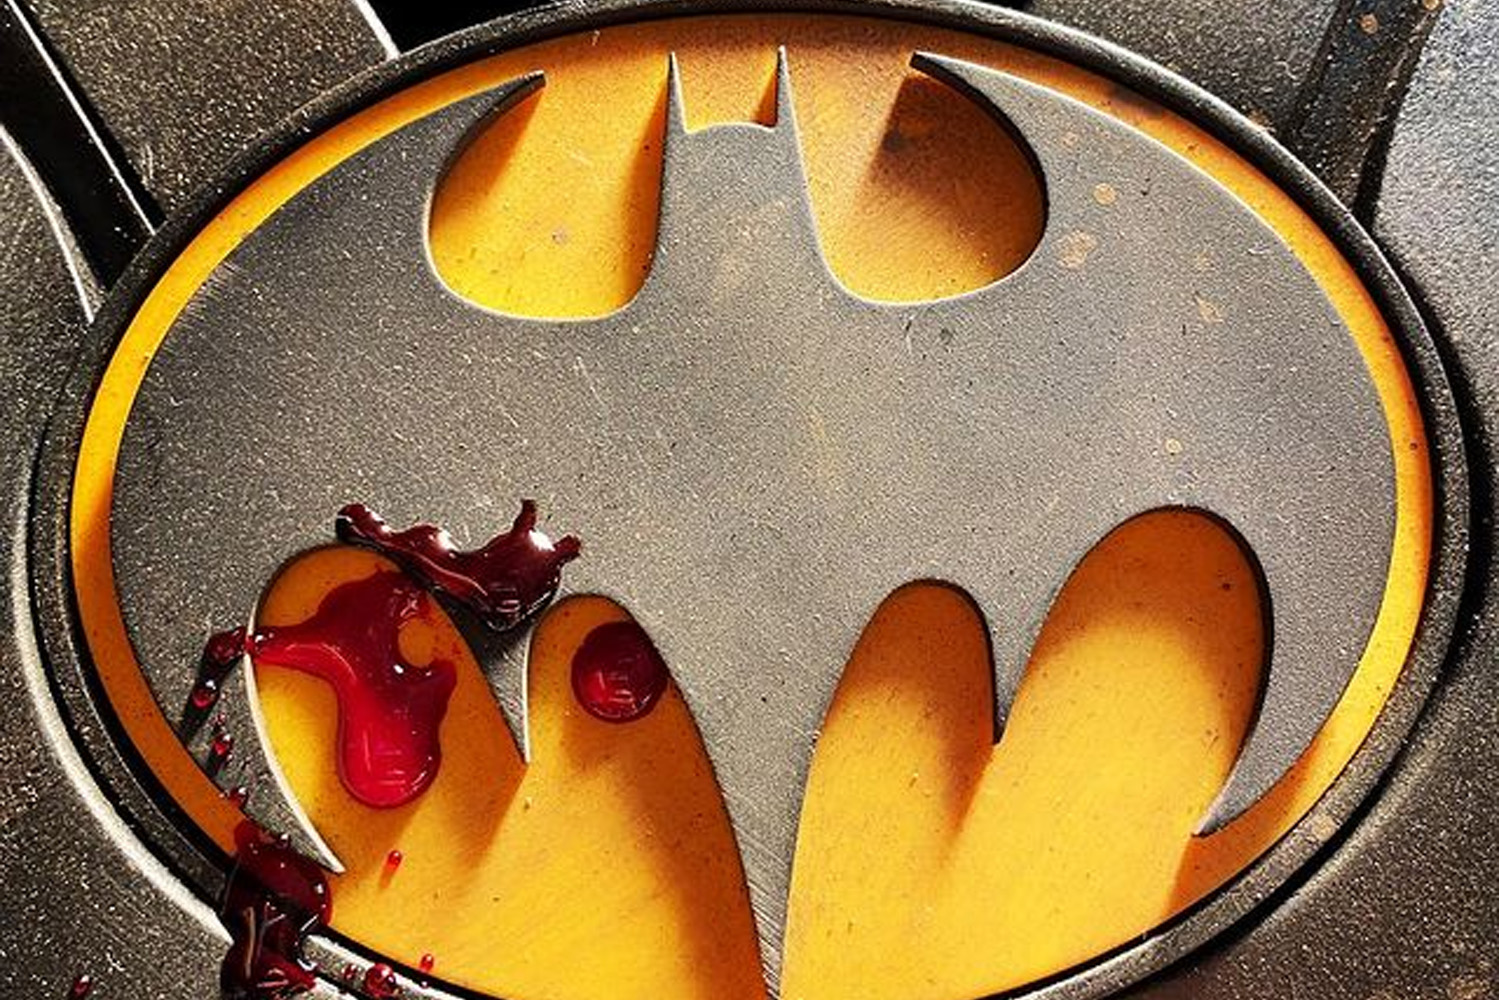 《闪电侠 The Flash》导演曝光 Michael Keaton 版本「蝙蝠侠」最新战衣 Logo